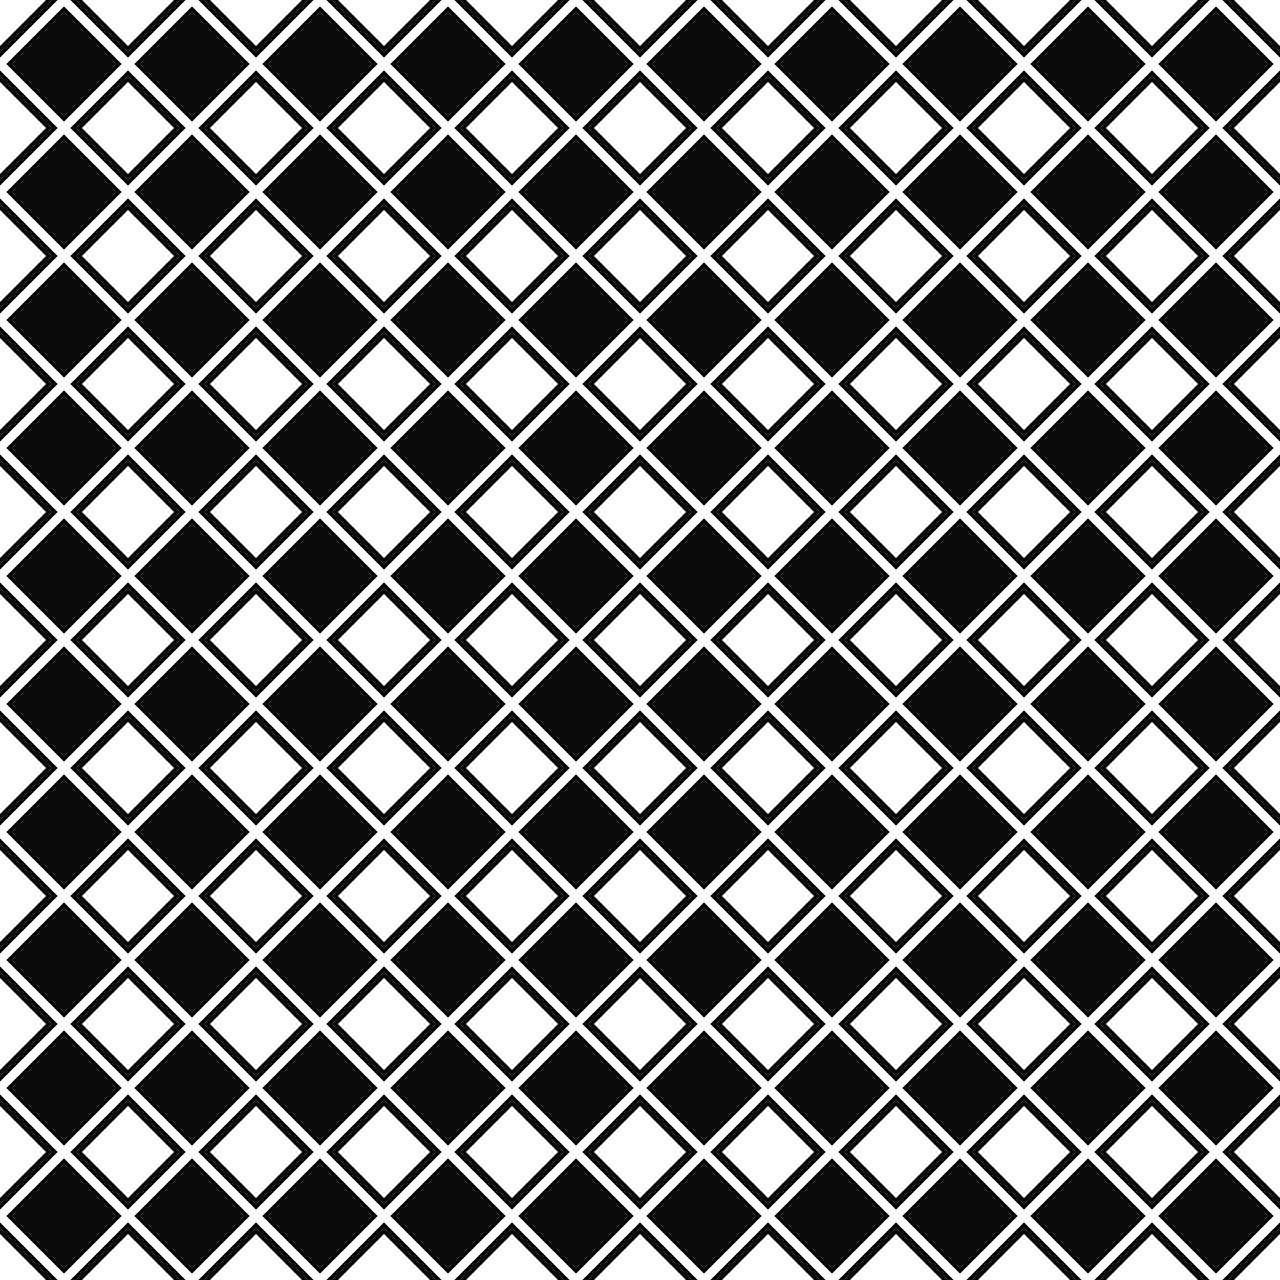 square diagonal pattern free photo